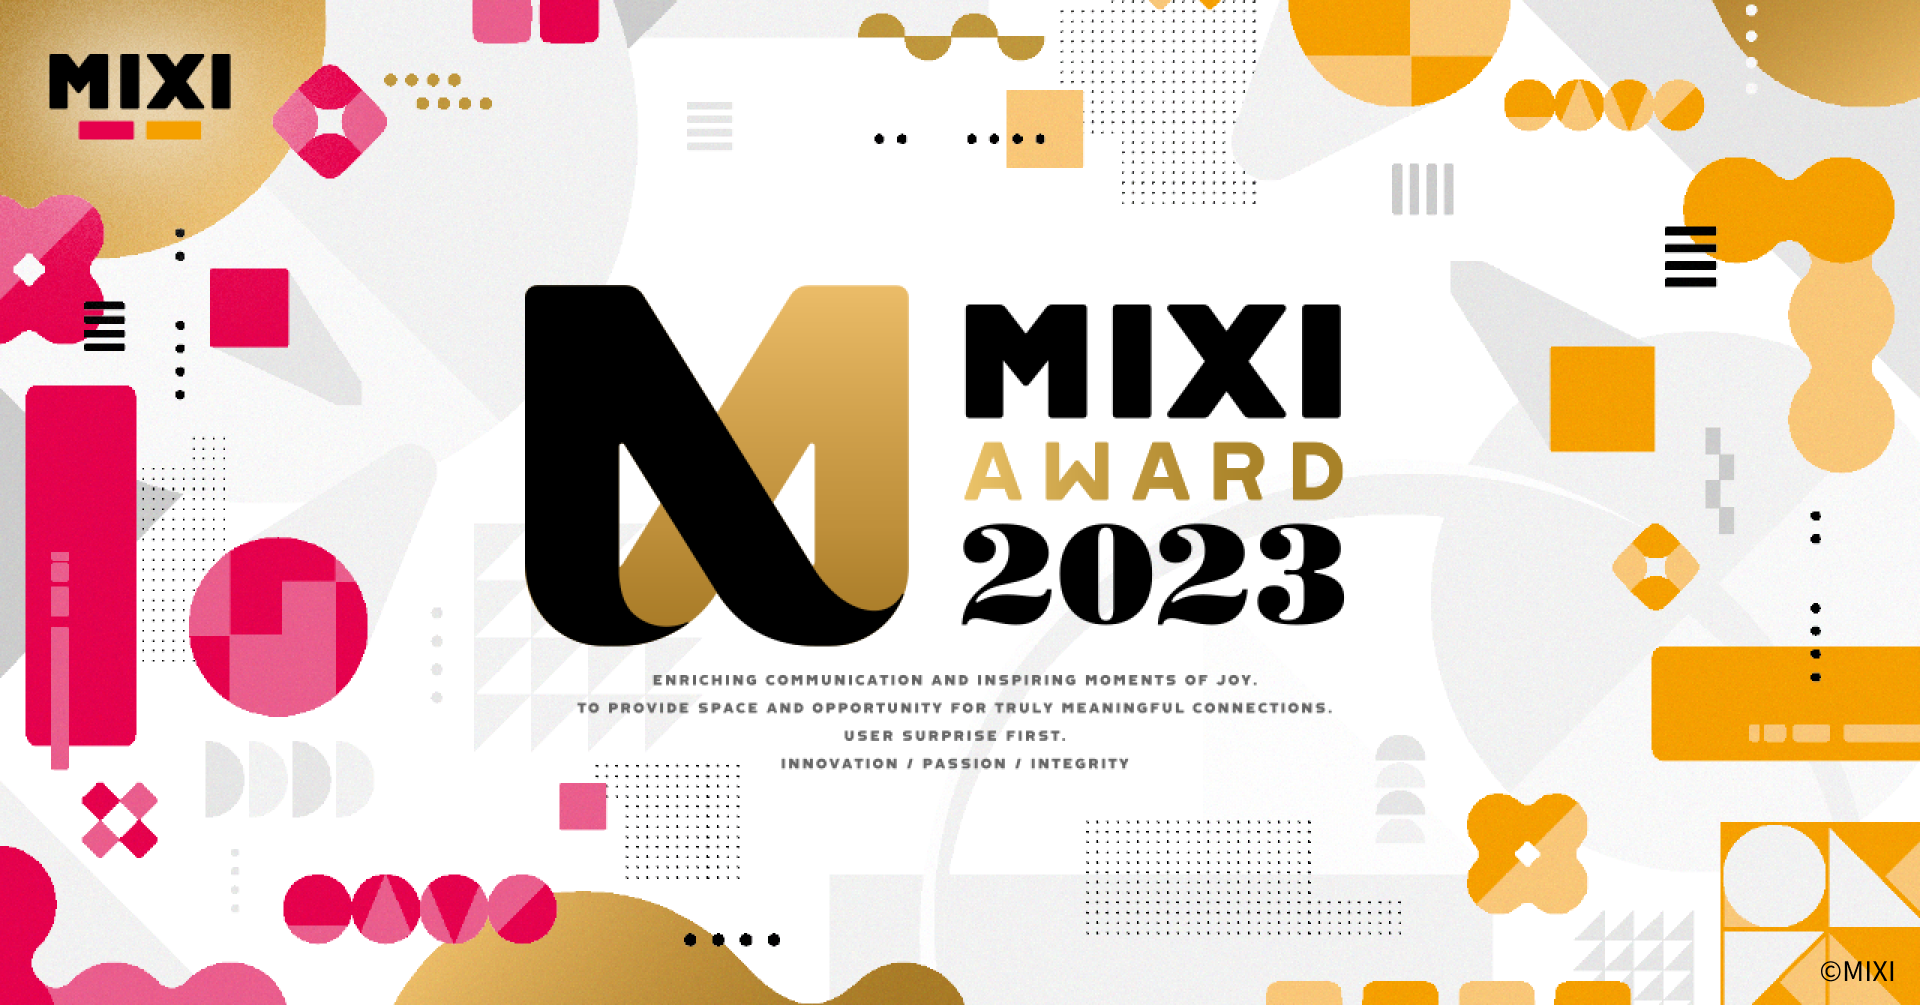 企業理念浸透の「拠り所」をつくるように。MIXI AWARD 2023のアートディレクションについて